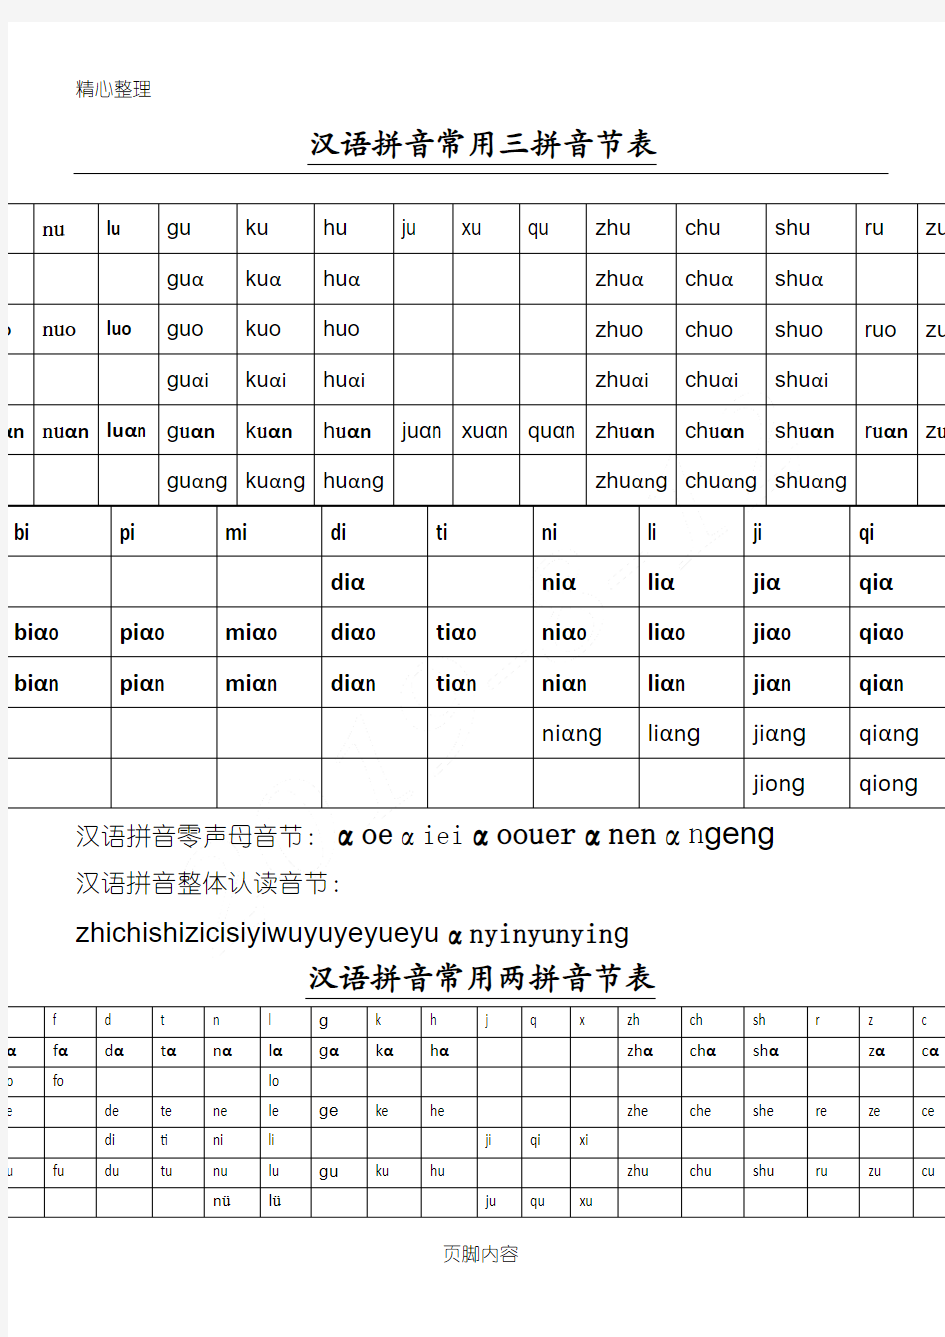 汉 语 拼 音 常 用 三 拼 音 节 和二拼音节表格模板